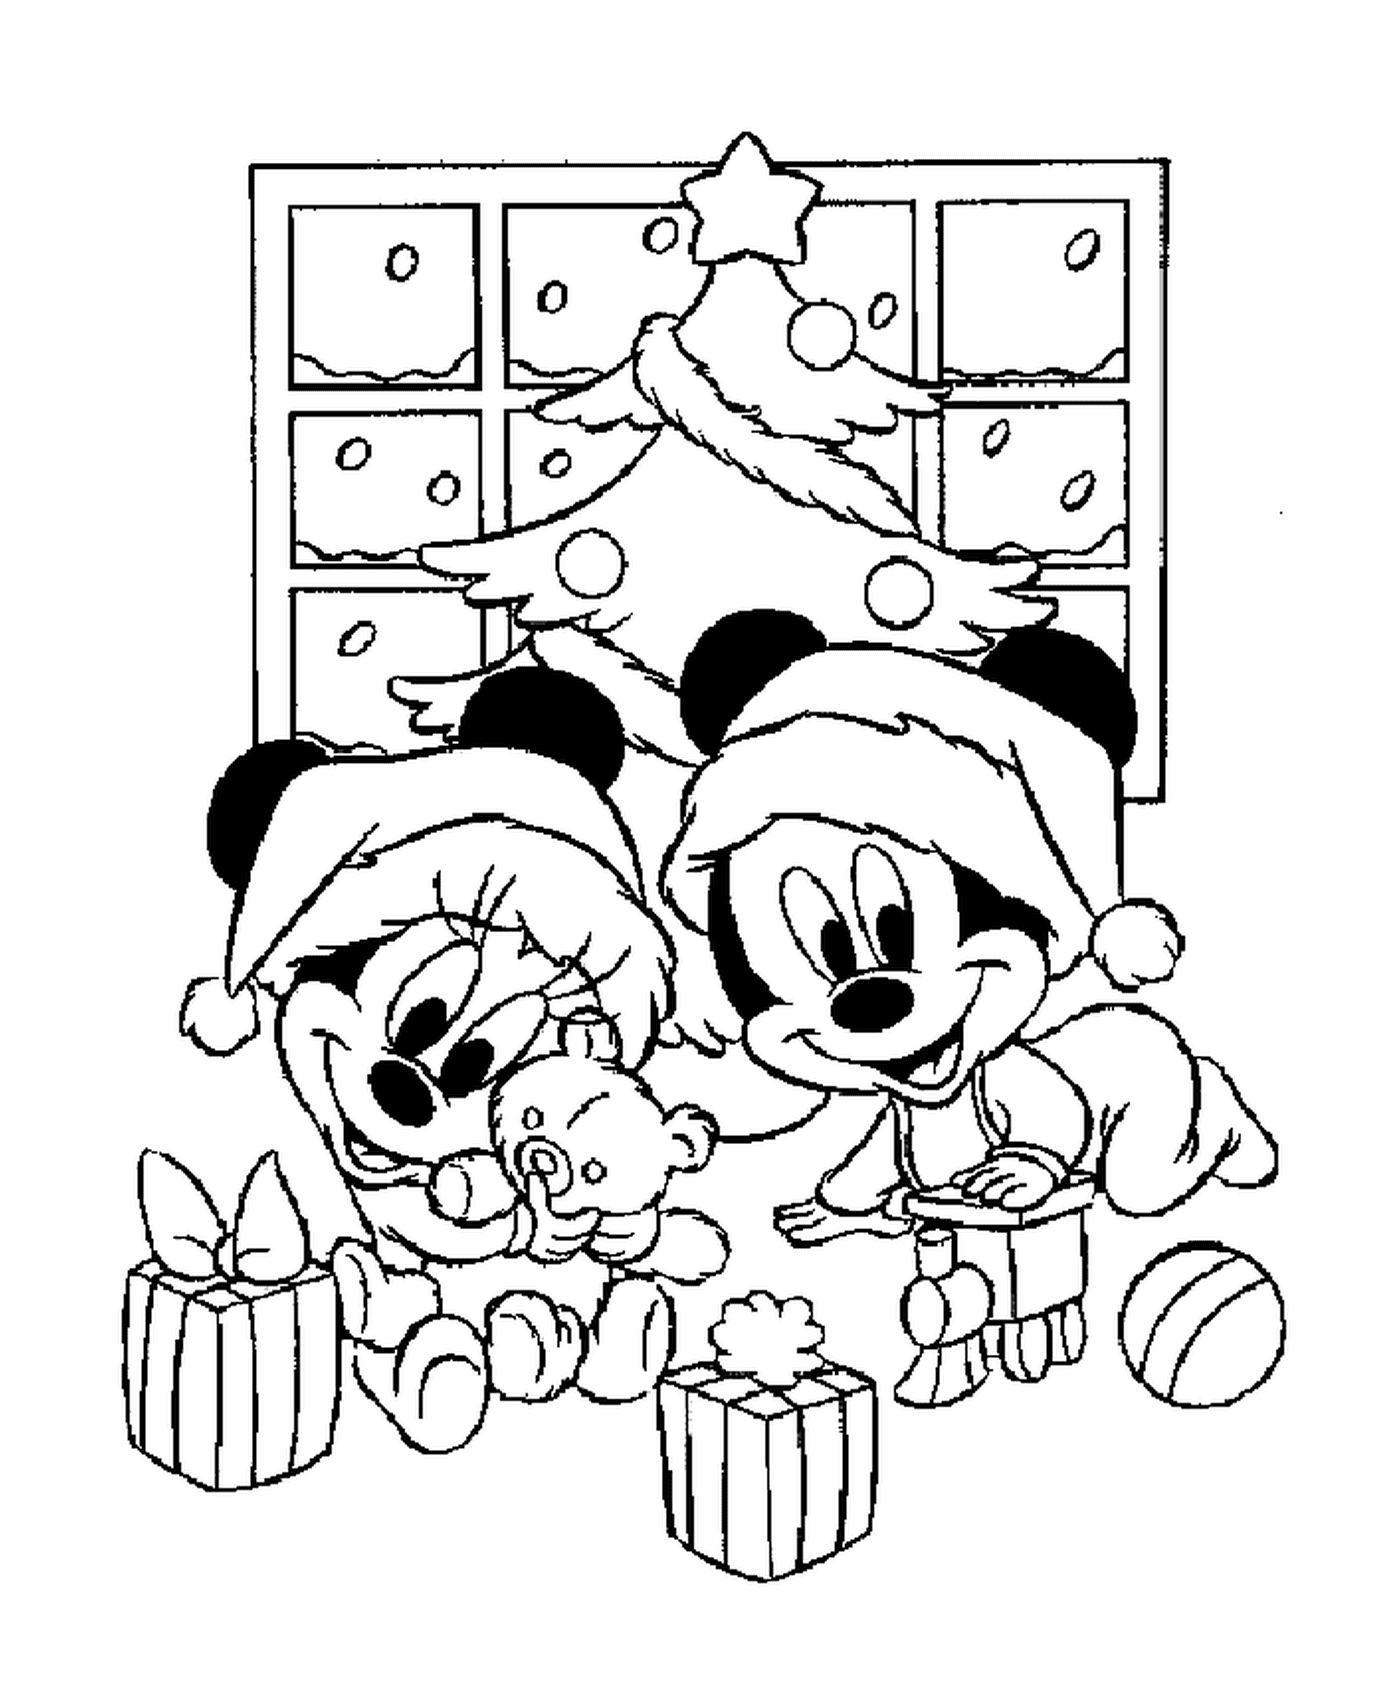  Babies Mickey und Minnie spielen mit ihren Geschenken vor dem Baum 